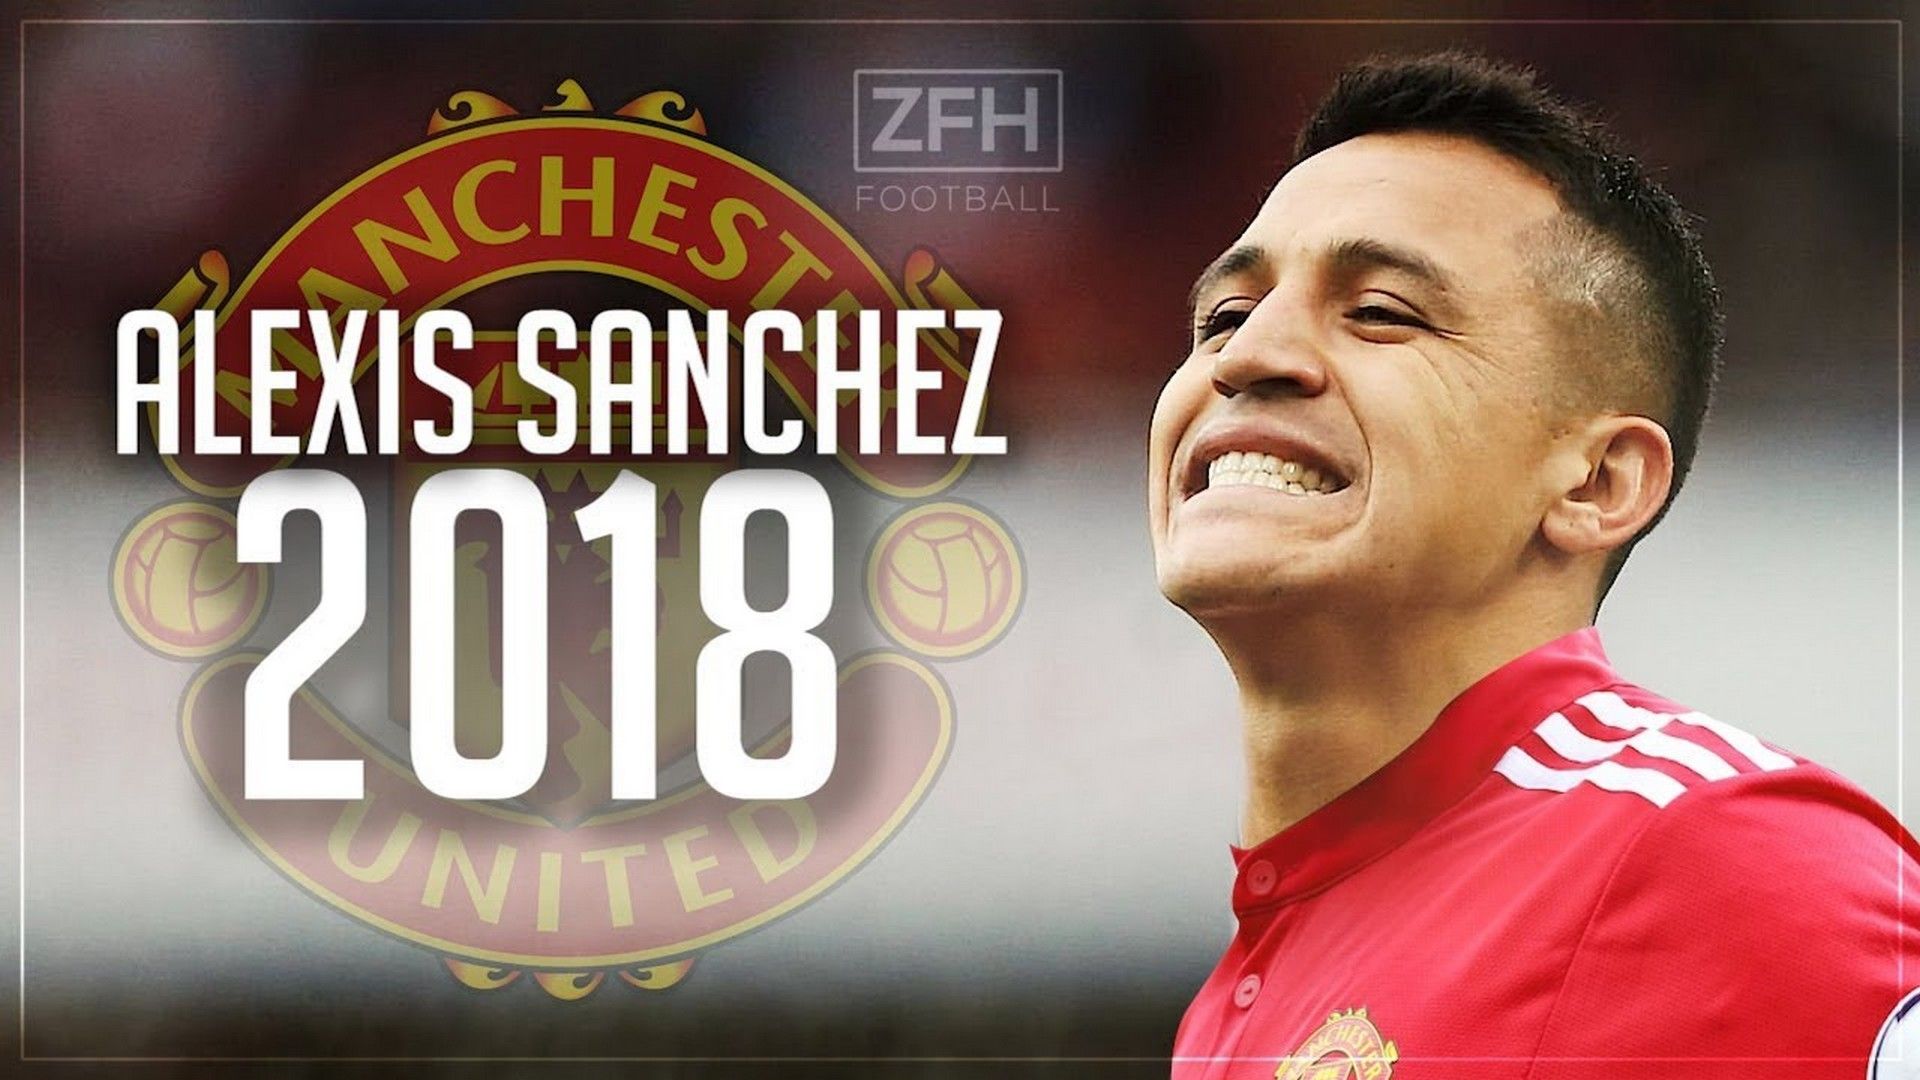 Alexis Sanchez Manchester United Wallpaper HD